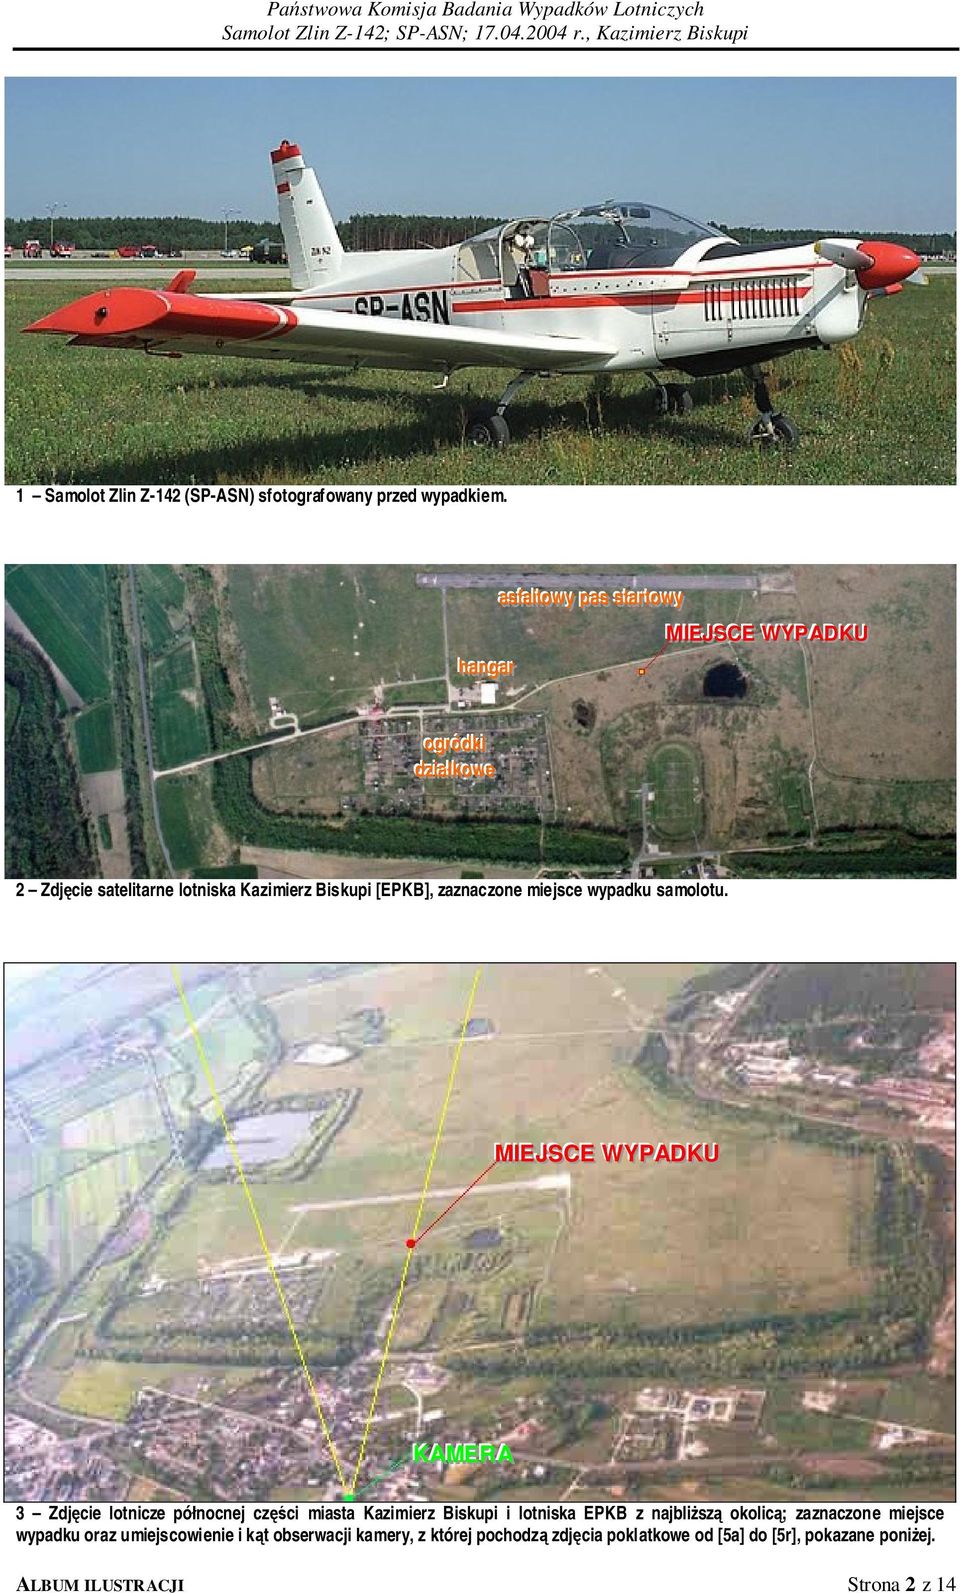 Zdjęcie satelitarne lotniska Kazimierz Biskupi [EPKB], zaznaczone miejsce wypadku samolotu.